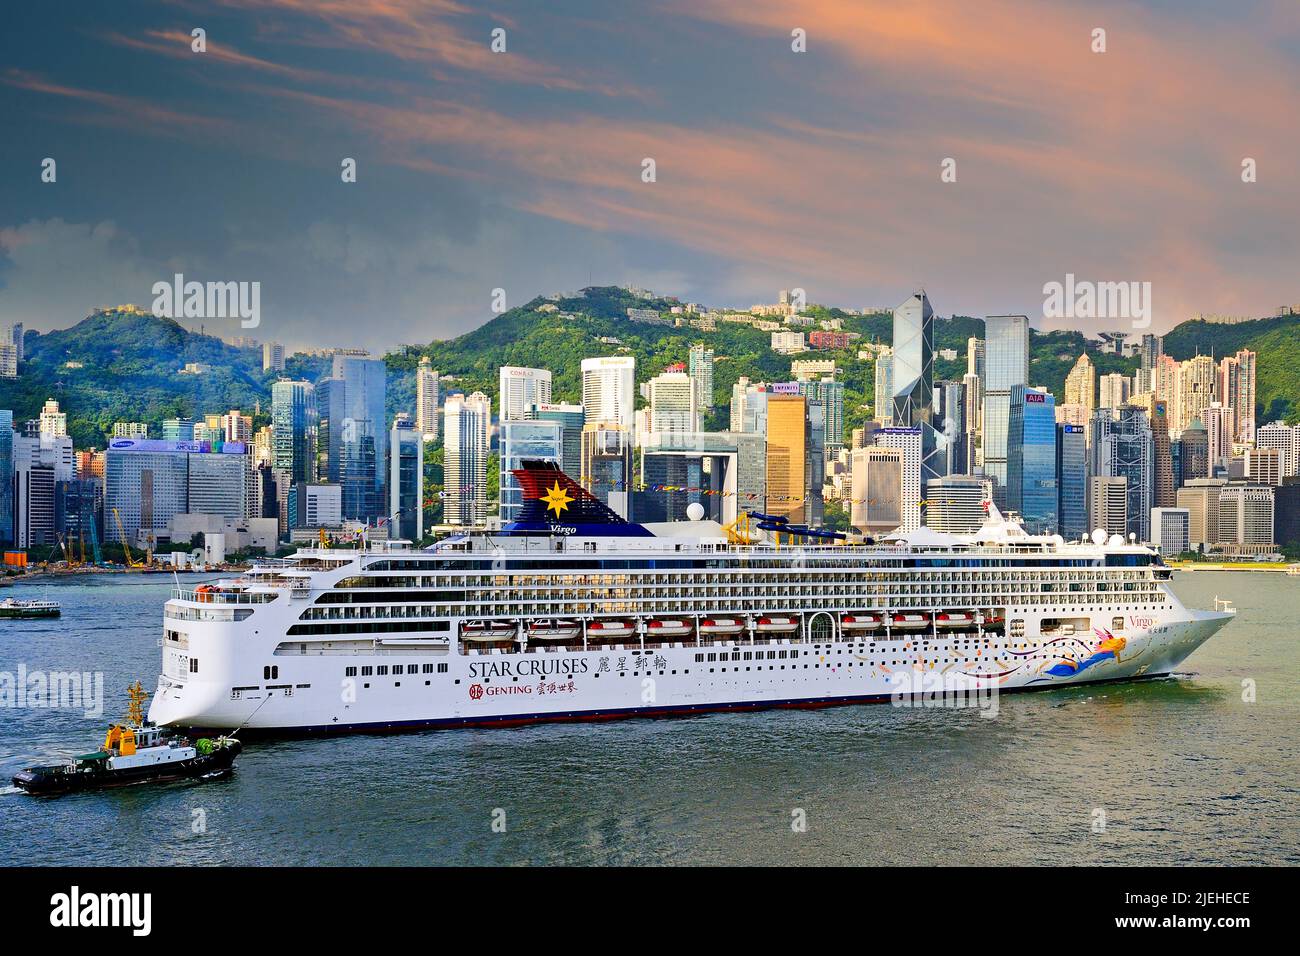 Großes Kreuzfahrtschiff fährt am frühen Morgen auf dem Hongkong River, zwischen Central und Kowloon, Hongkong, Cina, Superstar Virgo, Star Cruises, Foto Stock